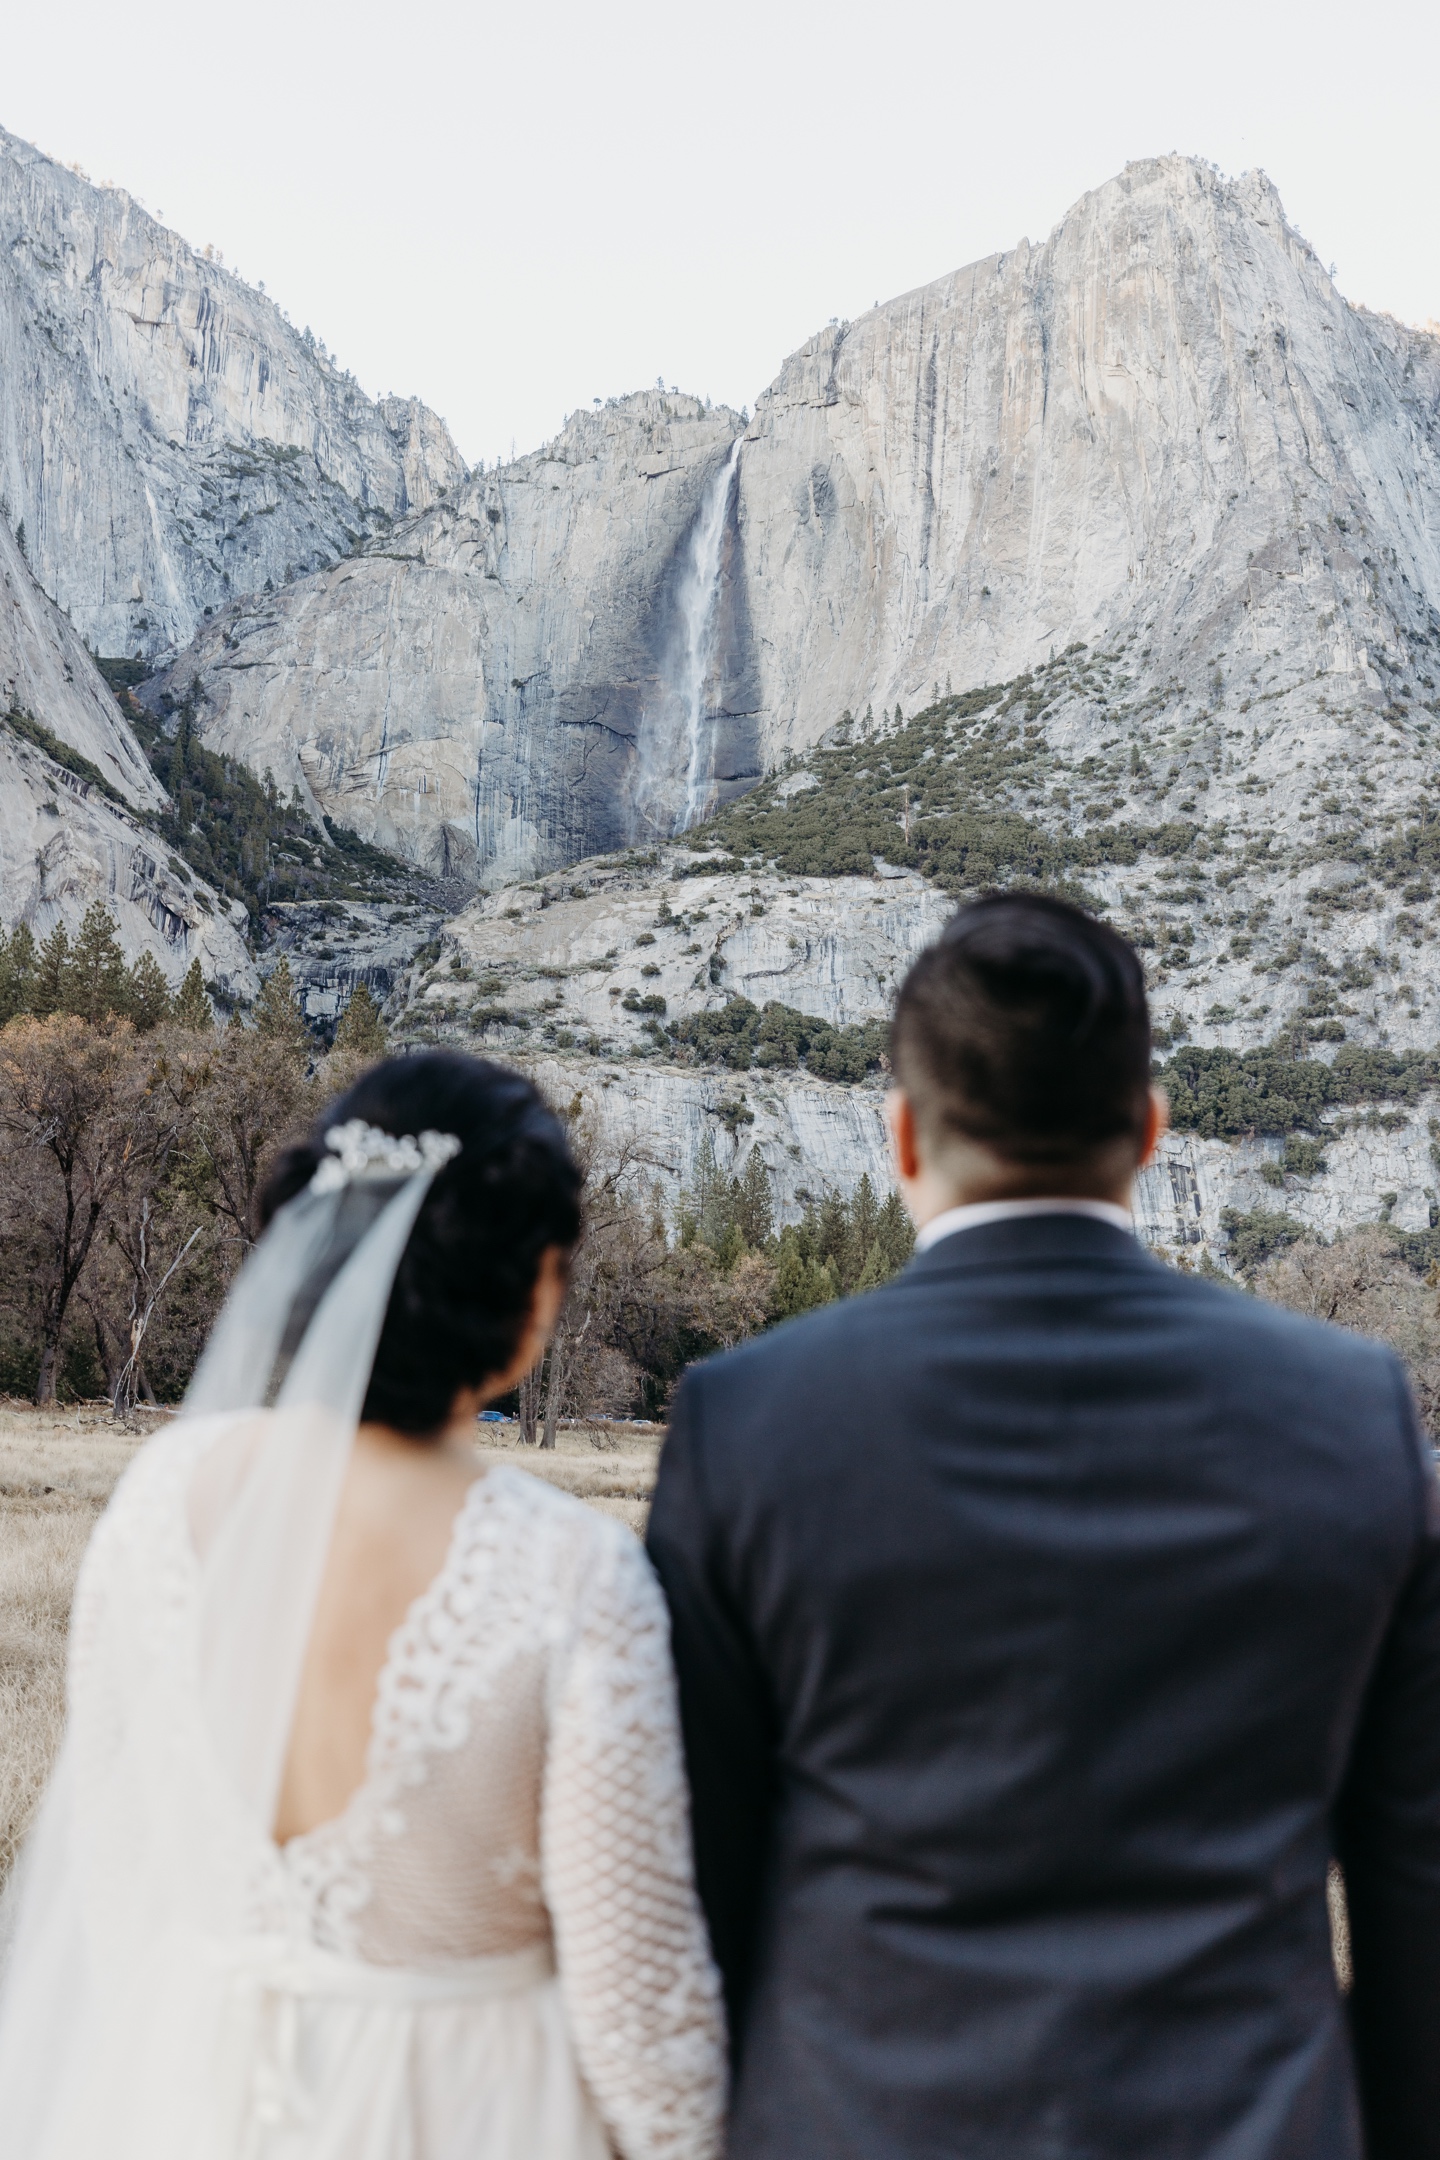 Bride and groom gaze a Yosemite Falls in their wedding attire.